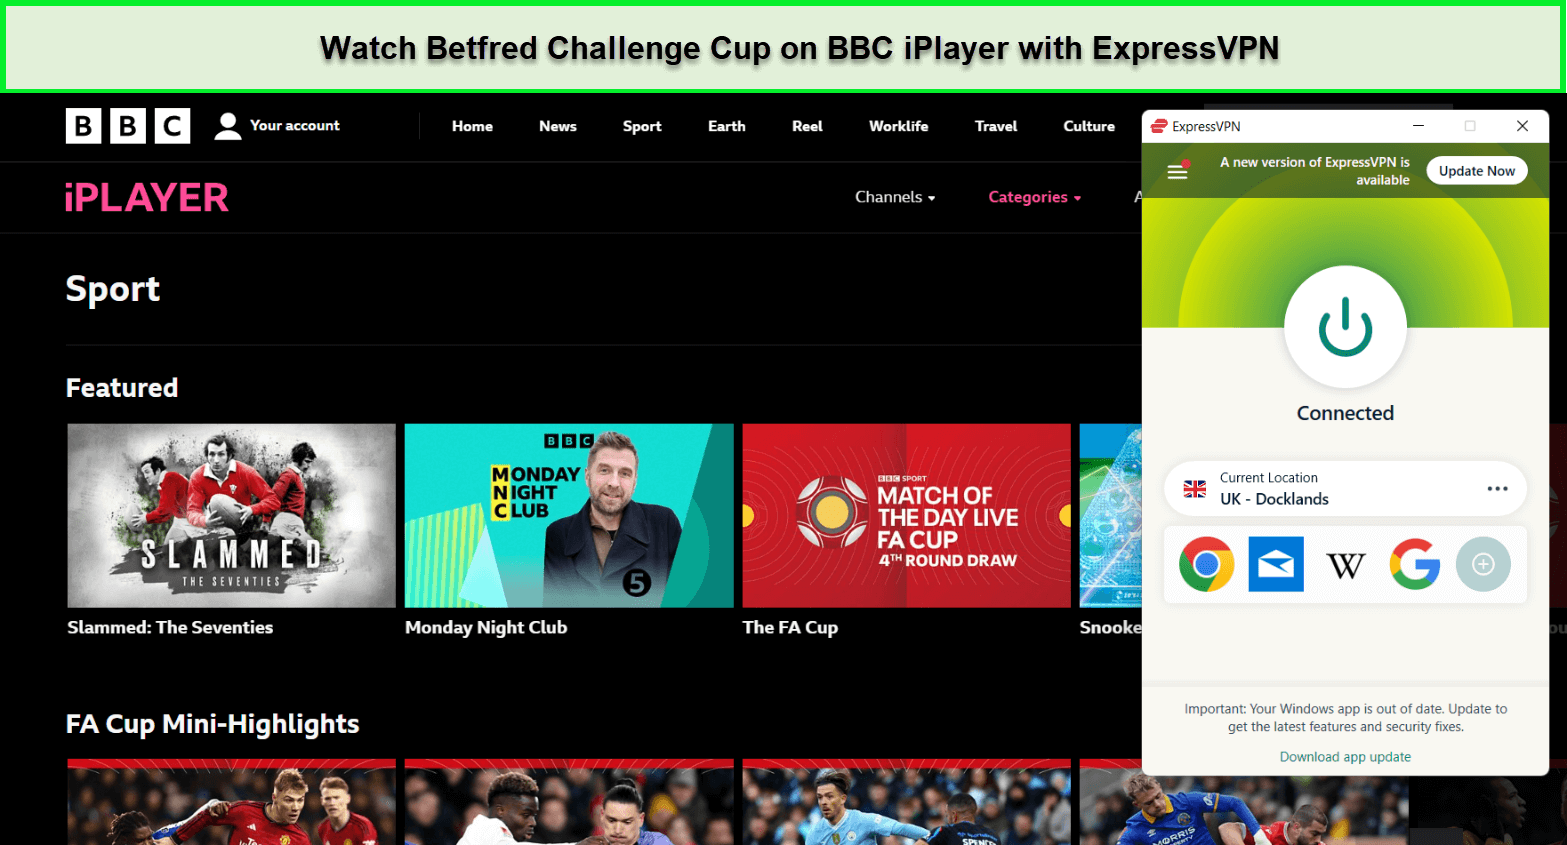  Regardez la Coupe Betfred Challenge. in - France -sur-BBC-iPlayer-via-ExpressVPN -sur BBC iPlayer via ExpressVPN -sur BBC iPlayer via ExpressVPN -sur BBC iPlayer via ExpressVPN -sur BBC iPlayer via ExpressVPN -sur BBC iPlayer via ExpressVPN -sur BBC iPlayer via ExpressVPN -sur BBC iPlayer via ExpressVPN -sur BBC iPlayer via ExpressVPN -sur BBC iPlayer via ExpressVPN -sur BBC iPlayer via ExpressVPN -sur BBC iPlayer via ExpressVPN -sur 